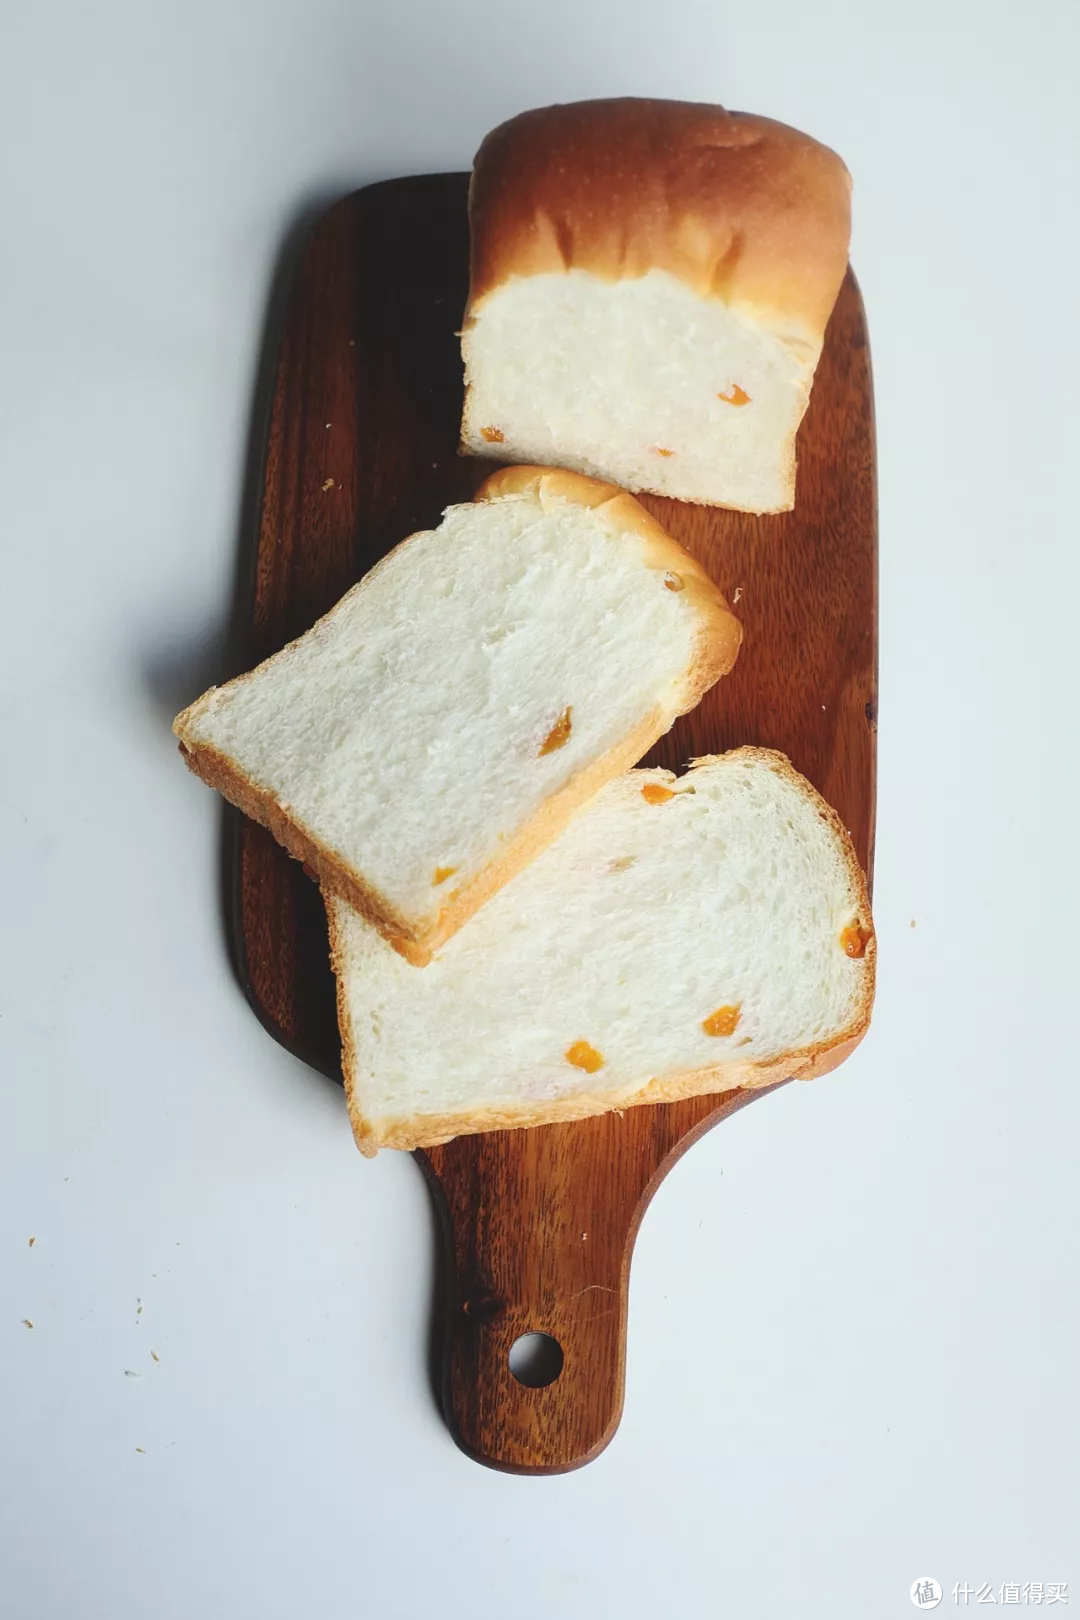 3个细节帮你做出好吃的面包